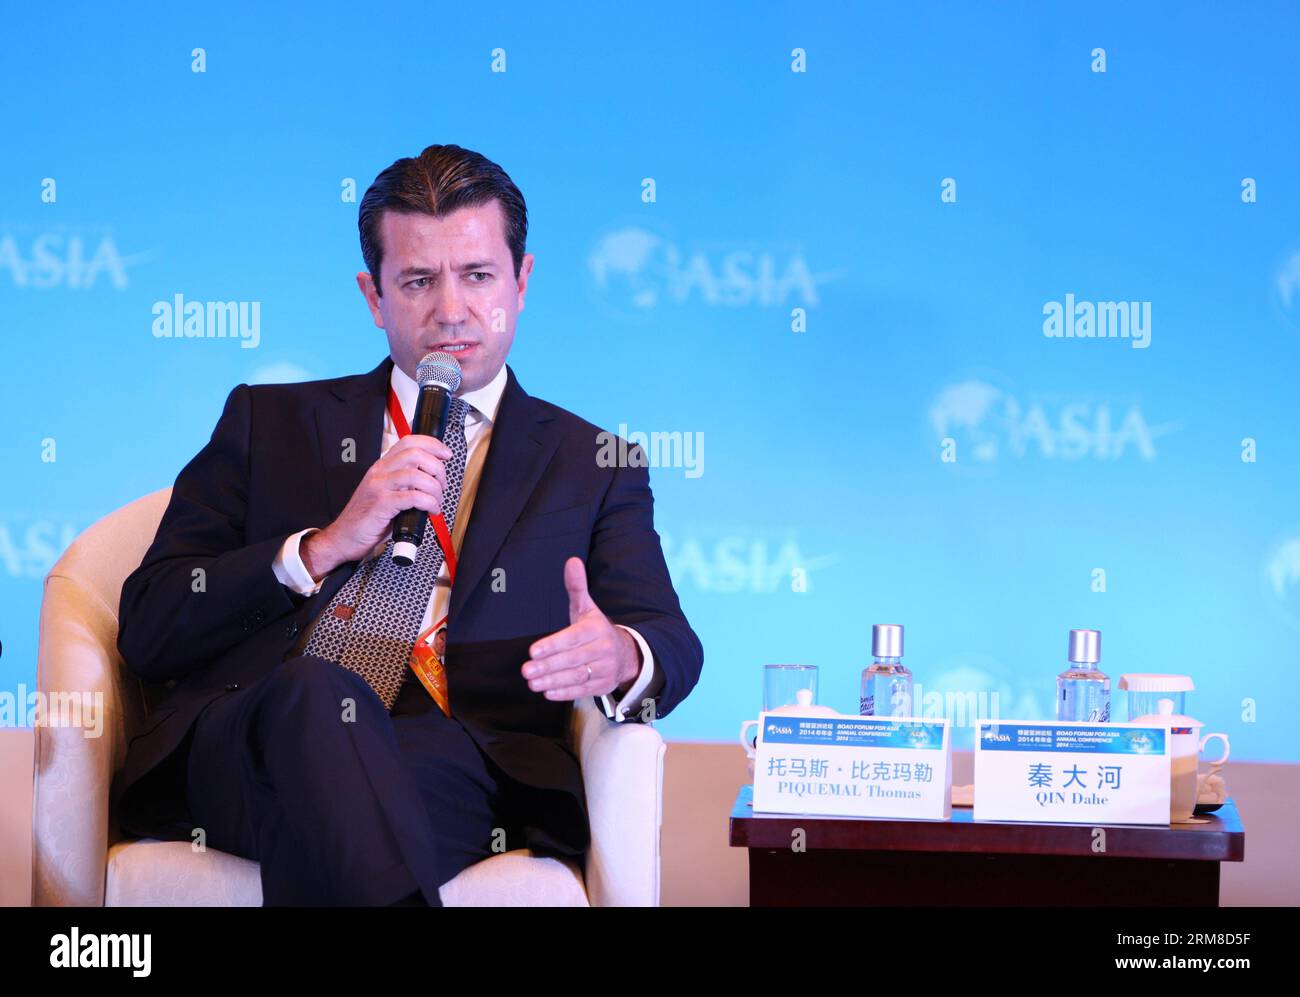 (140409) -- BOAO, 9 avril 2014 (Xinhua) -- Thomas Piquemal, directeur financier d'électricité de France, prend la parole lors d'un forum sur les nouvelles découvertes sur le changement climatique lors de la conférence annuelle 2014 du Forum Boao pour l'Asie (BFA) à Boao, dans la province de Hainan du sud de la Chine, le 9 avril 2014.(Xinhua/Wang Jingqiang) (zkr) CHINA-BOAO-BFA 2014-CLIMATE CHANGE(CN) PUBLICATIONxNOTxINxCHN Boao avril 9 2014 XINHUA Thomas Directeur financier d'Electricite de France prend la parole LORS d'un Forum SUR LES nouvelles découvertes SUR le changement CLIMATIQUE lors de la Conférence annuelle du Boao Forum for Asia BFA 2014 à Boao South China S Hainan province Banque D'Images